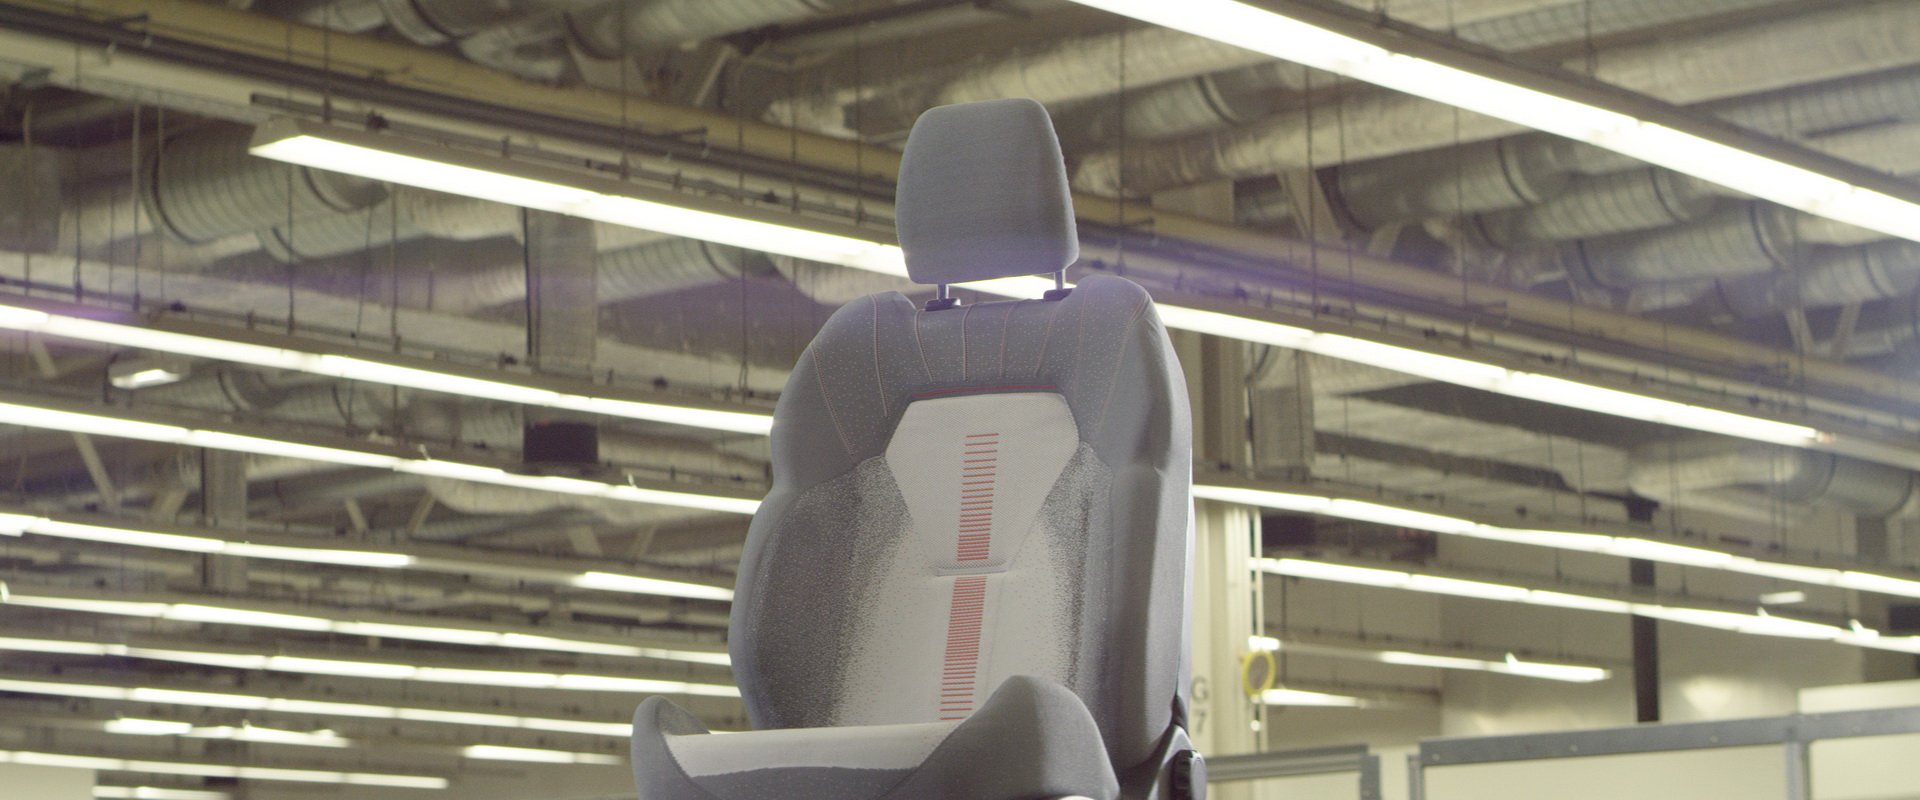 Ford trình làng ghế khâu 3D tích hợp khả năng sạc điện thoại - Ảnh 3.